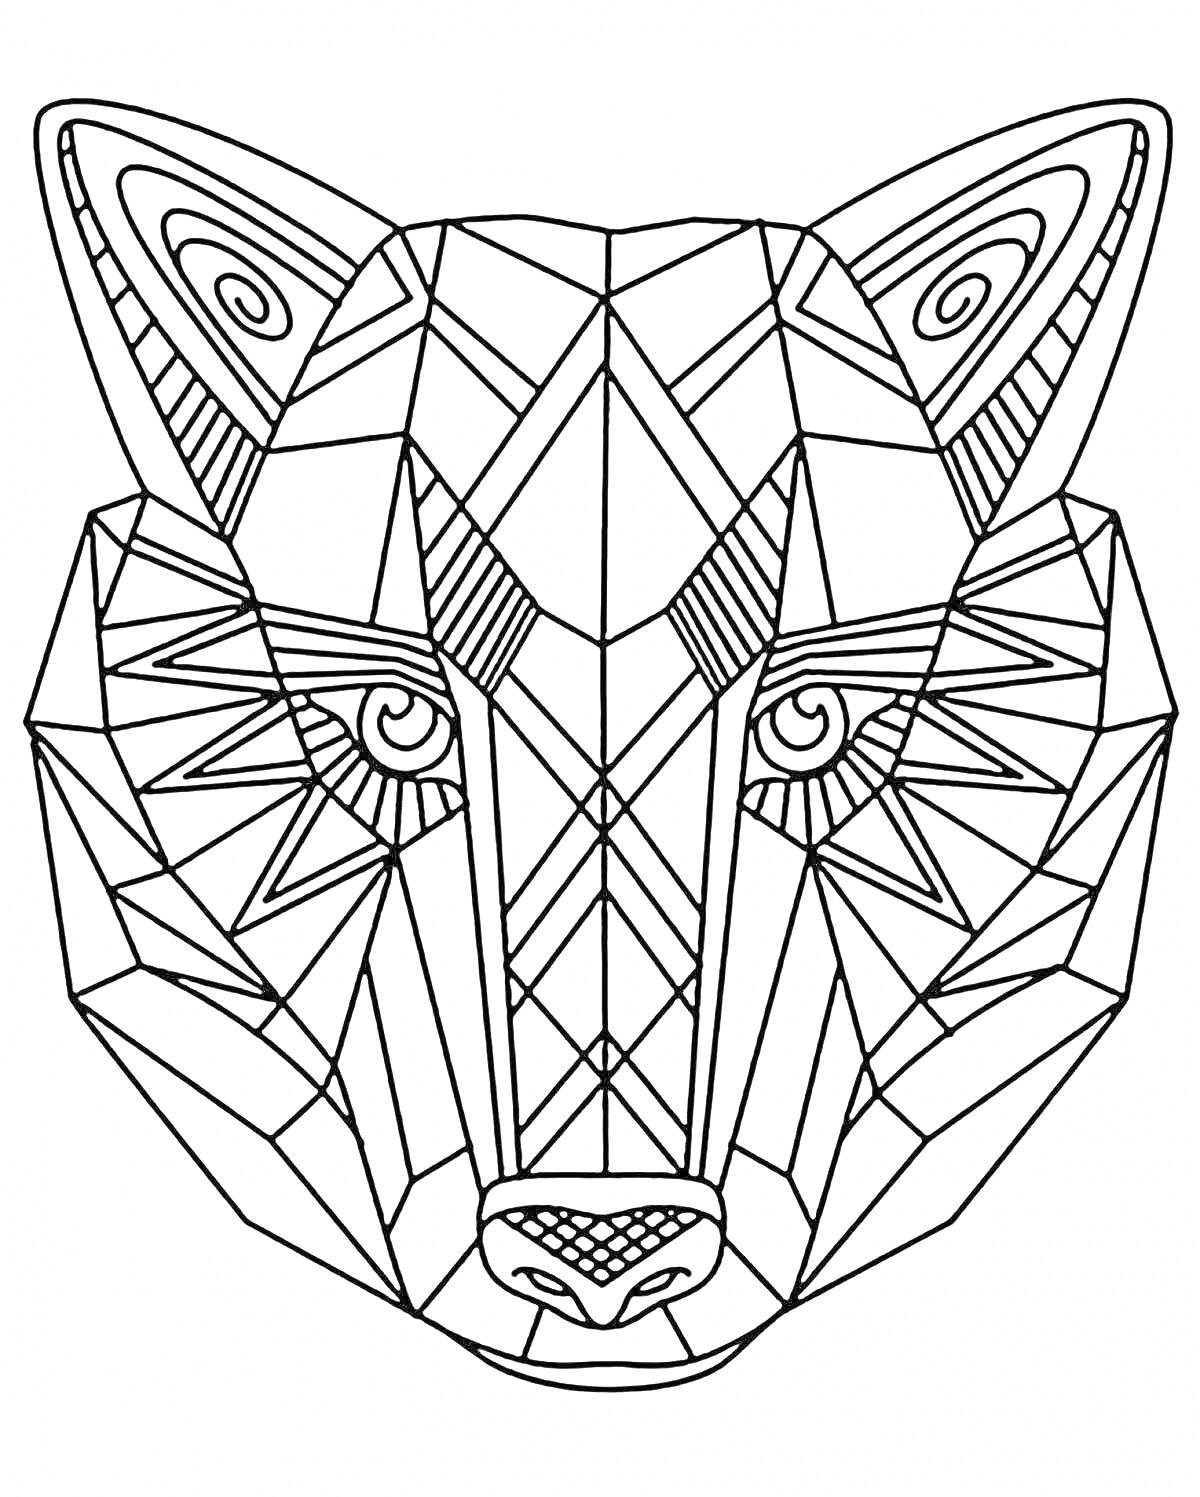 Раскраска Симметричное лицо волка с геометрическими узорами